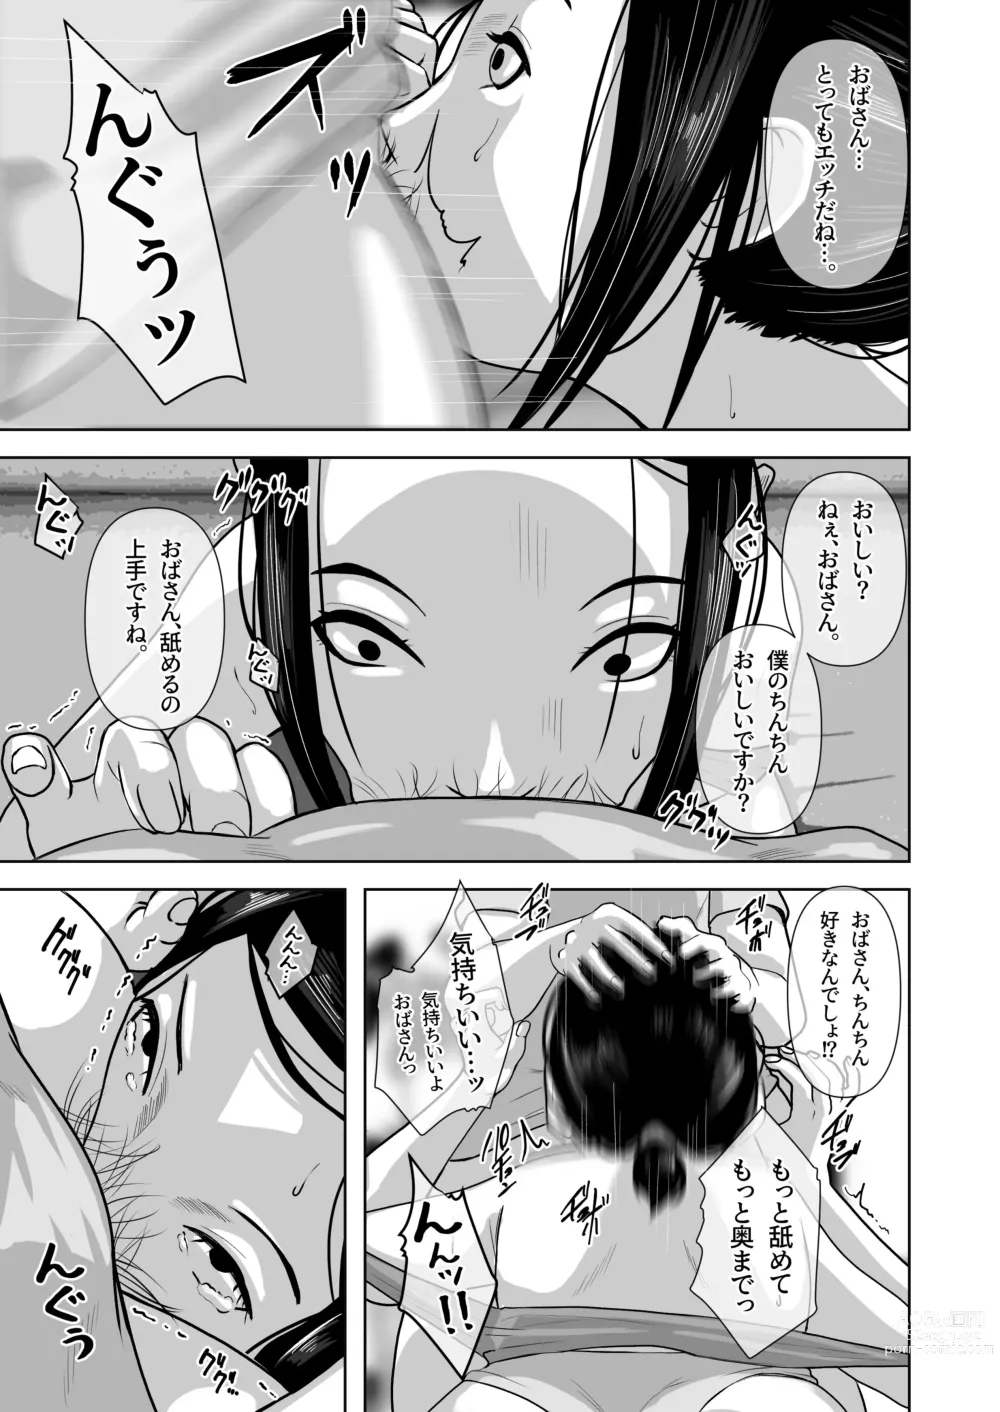 Page 28 of doujinshi Tomodachi no Okaa-san o Okazu ni Suru.